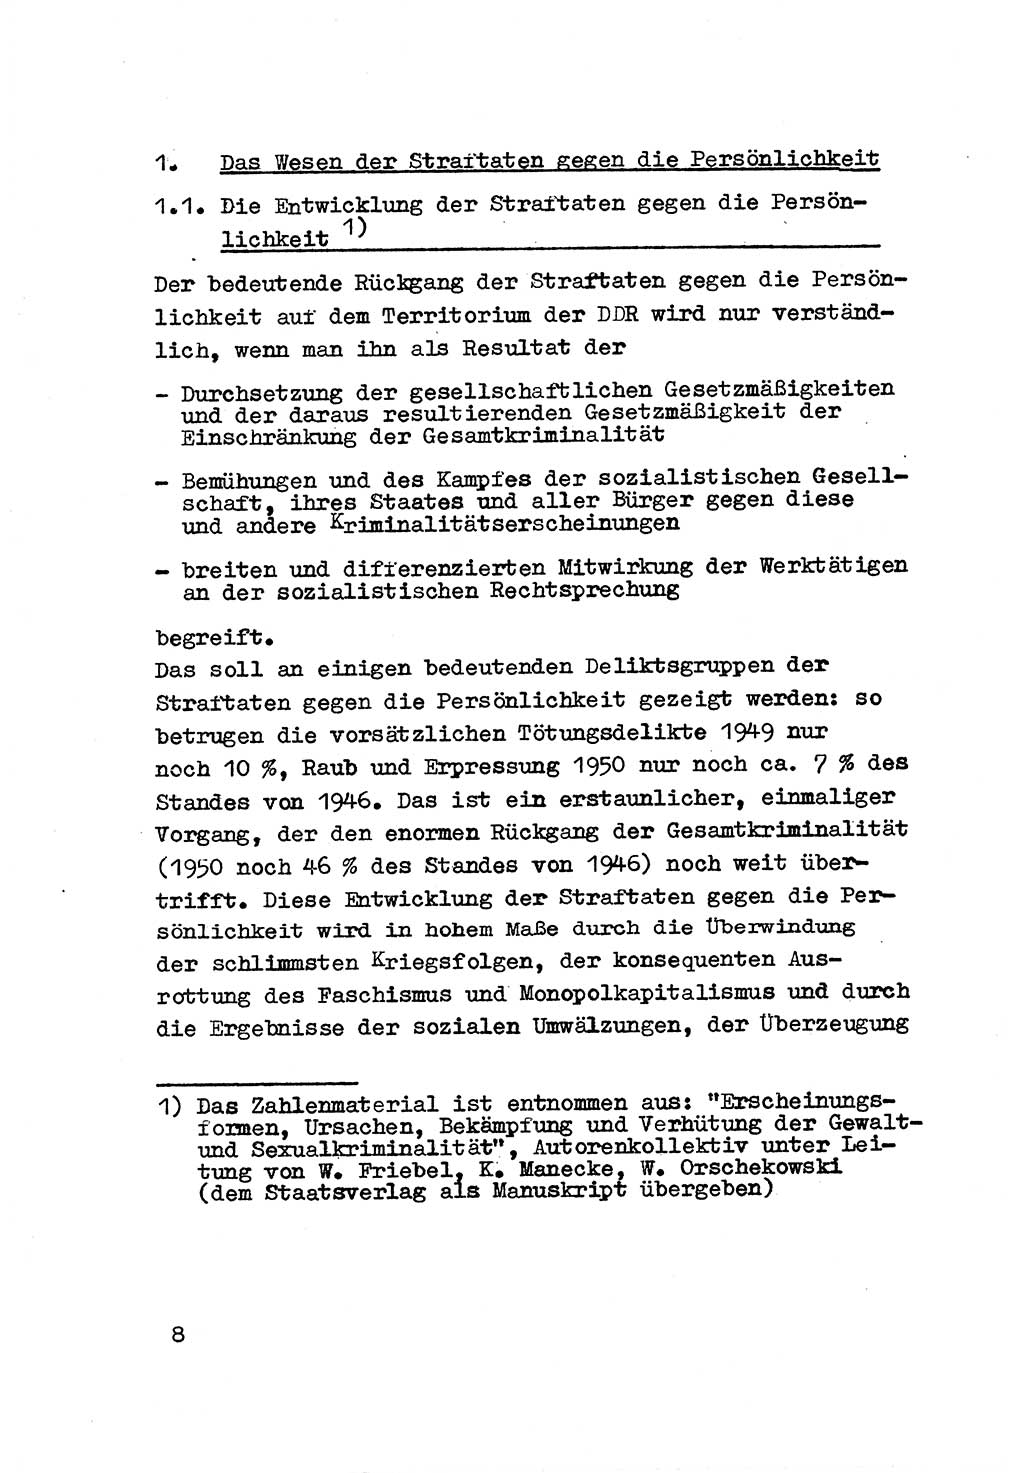 Strafrecht der DDR (Deutsche Demokratische Republik), Besonderer Teil, Lehrmaterial, Heft 3 1969, Seite 8 (Strafr. DDR BT Lehrmat. H. 3 1969, S. 8)